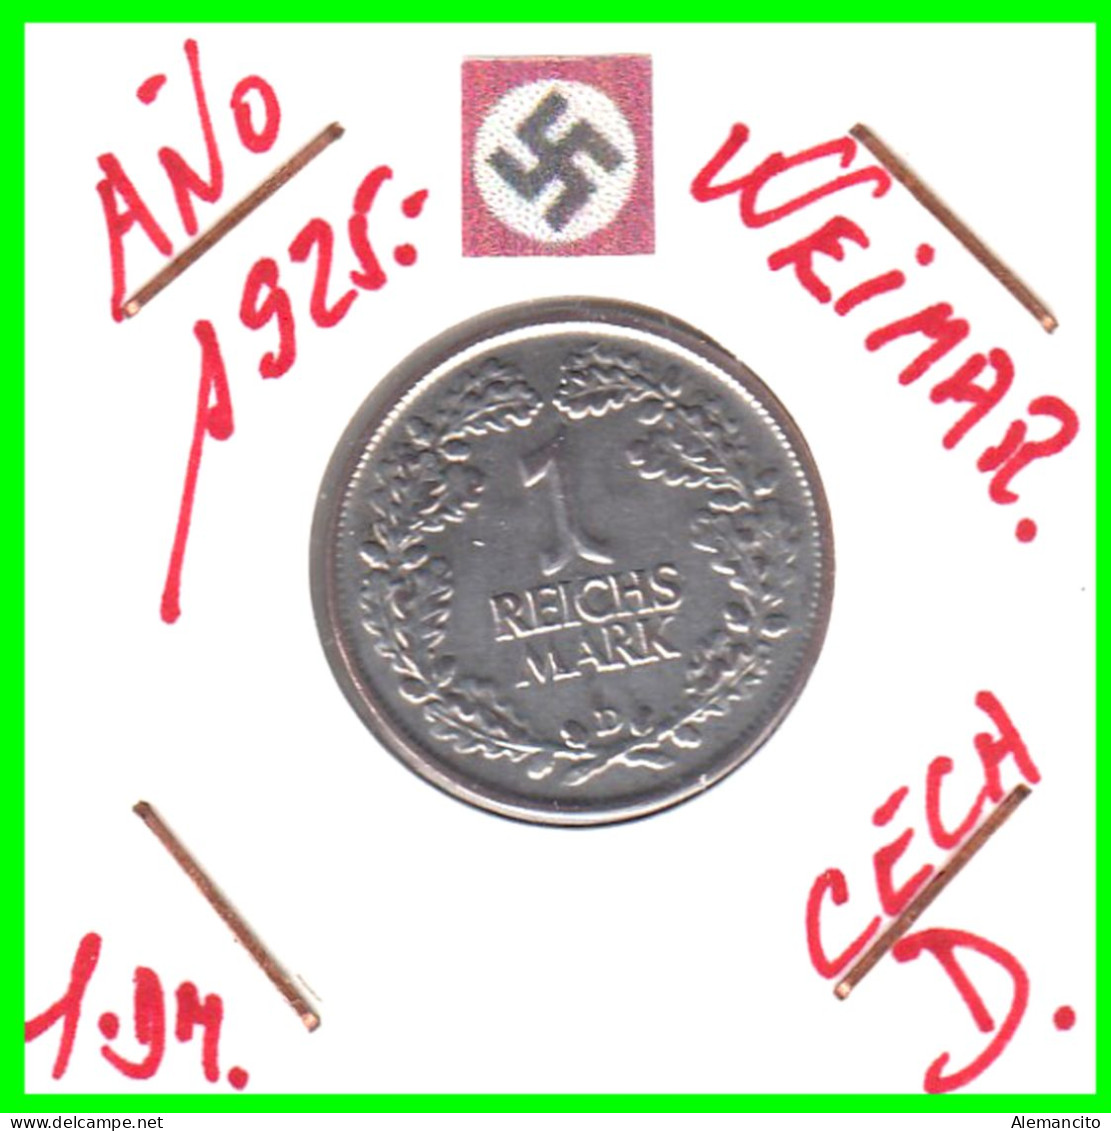 GERMANY REPÚBLICA DE WEIMAR 1 MARK ( 1925 CECA - D )  ( DEUTSCHES REICHSMARK KM # 44 ) - 1 Mark & 1 Reichsmark